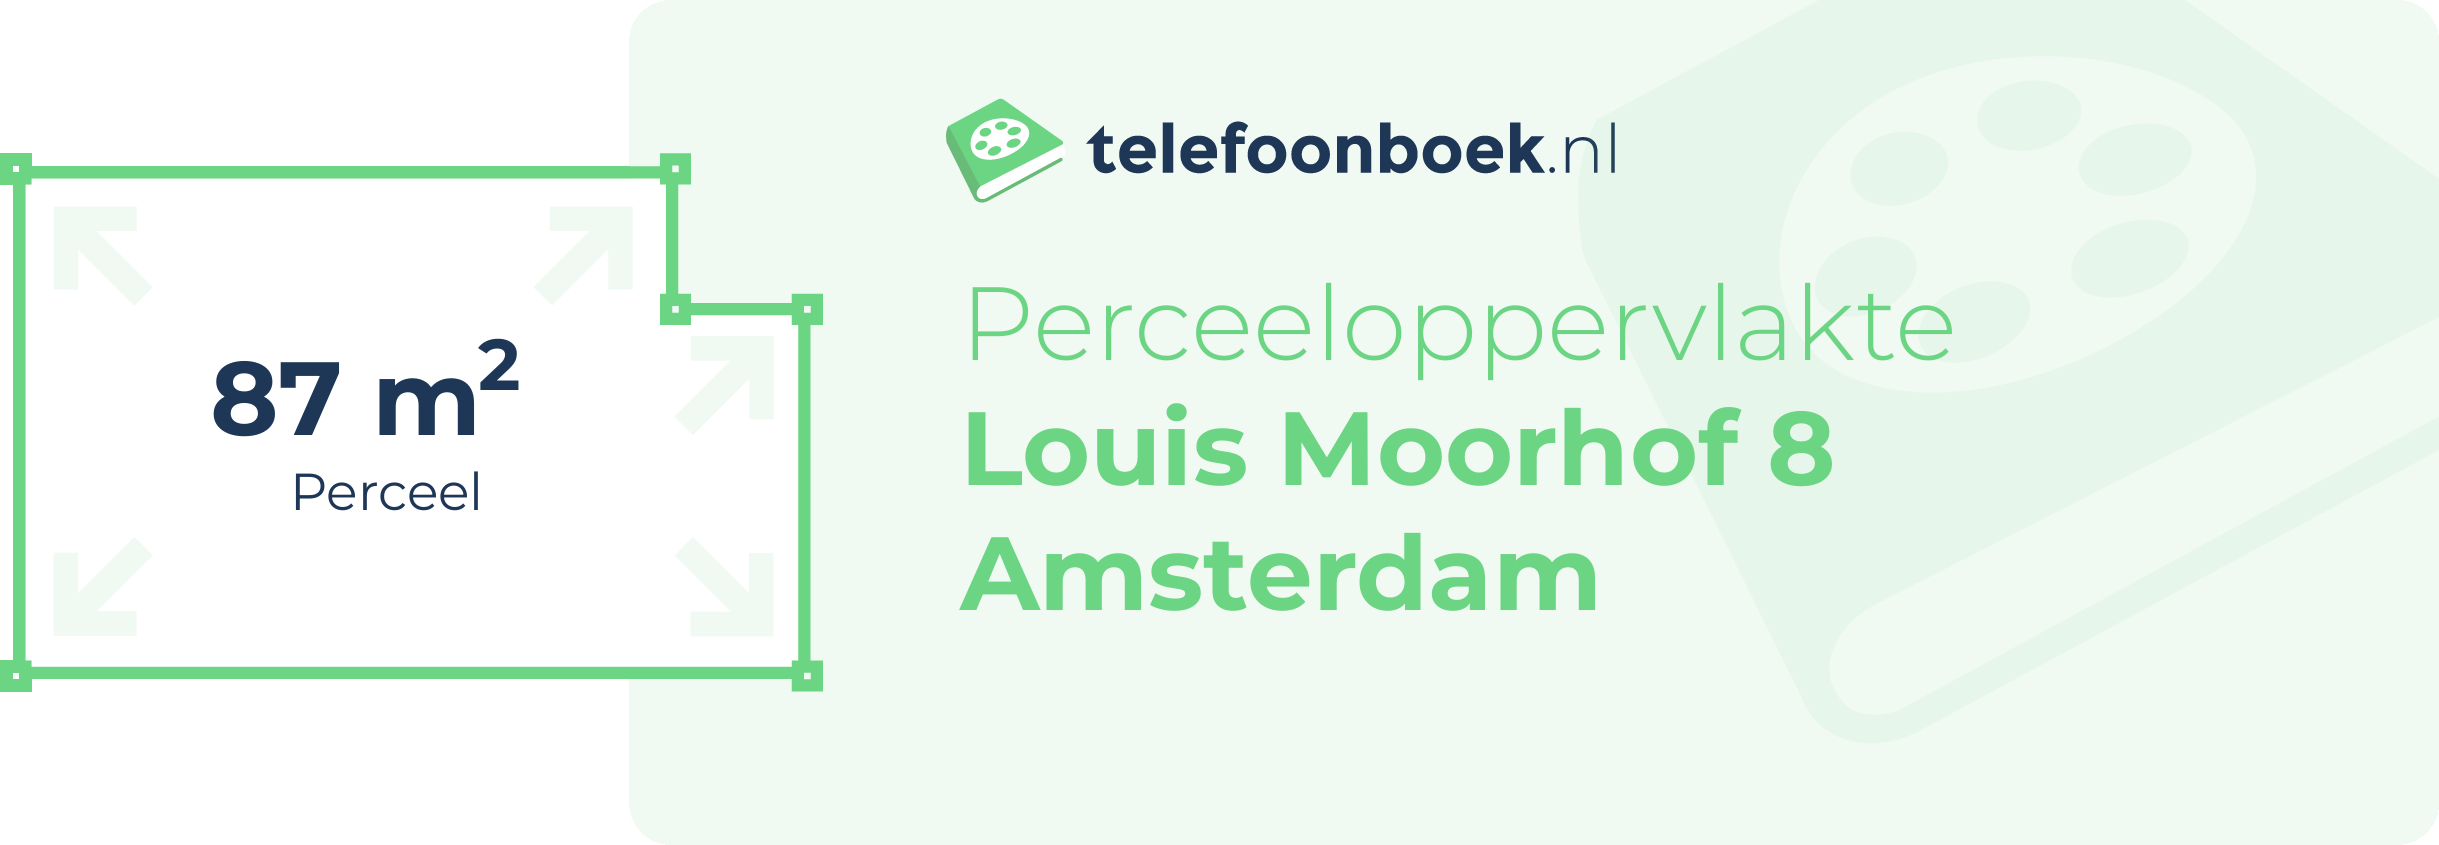 Perceeloppervlakte Louis Moorhof 8 Amsterdam